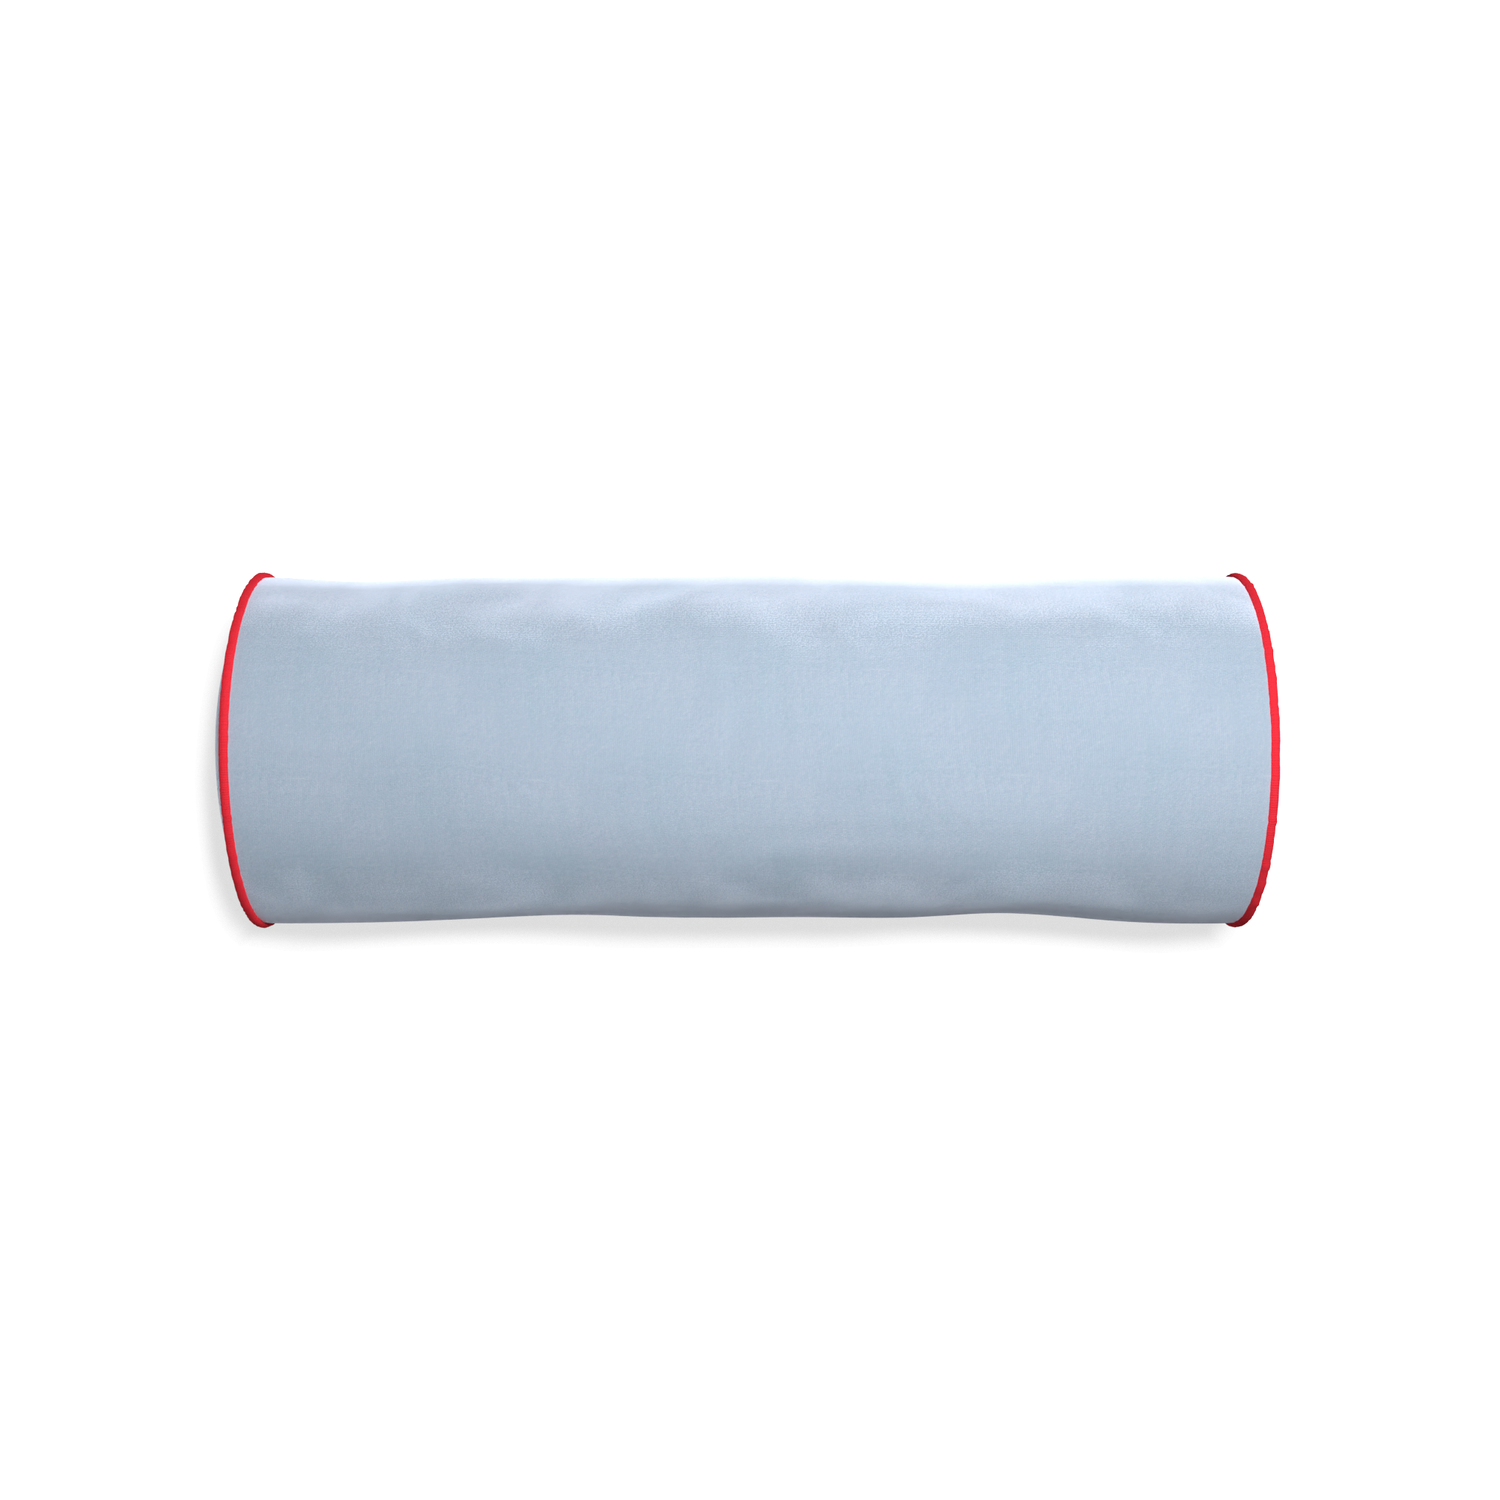 Bolster sky velvet custom pillow with cherry piping on white background